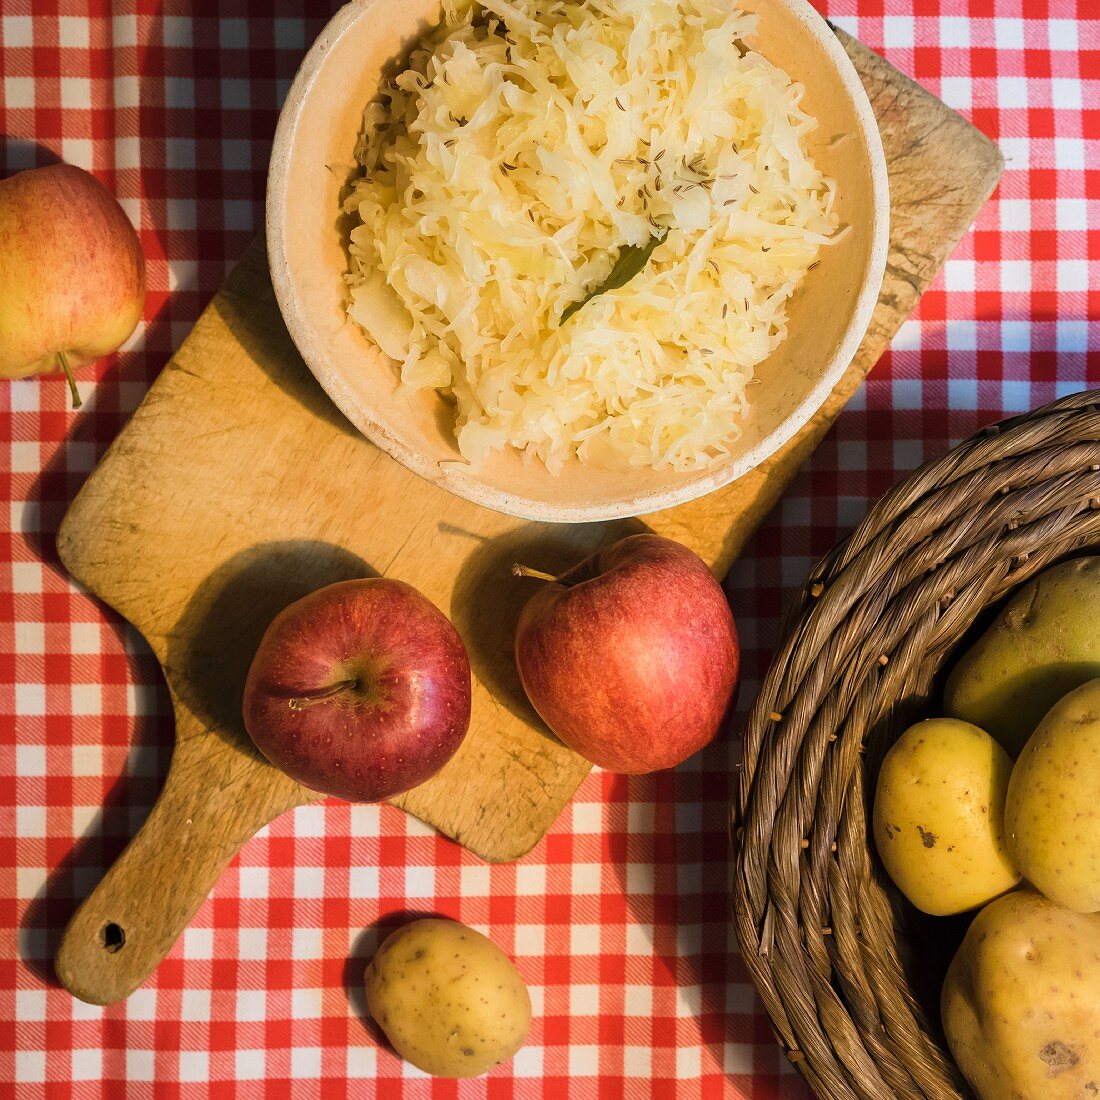 Vegan sauerkraut with apples and caraway